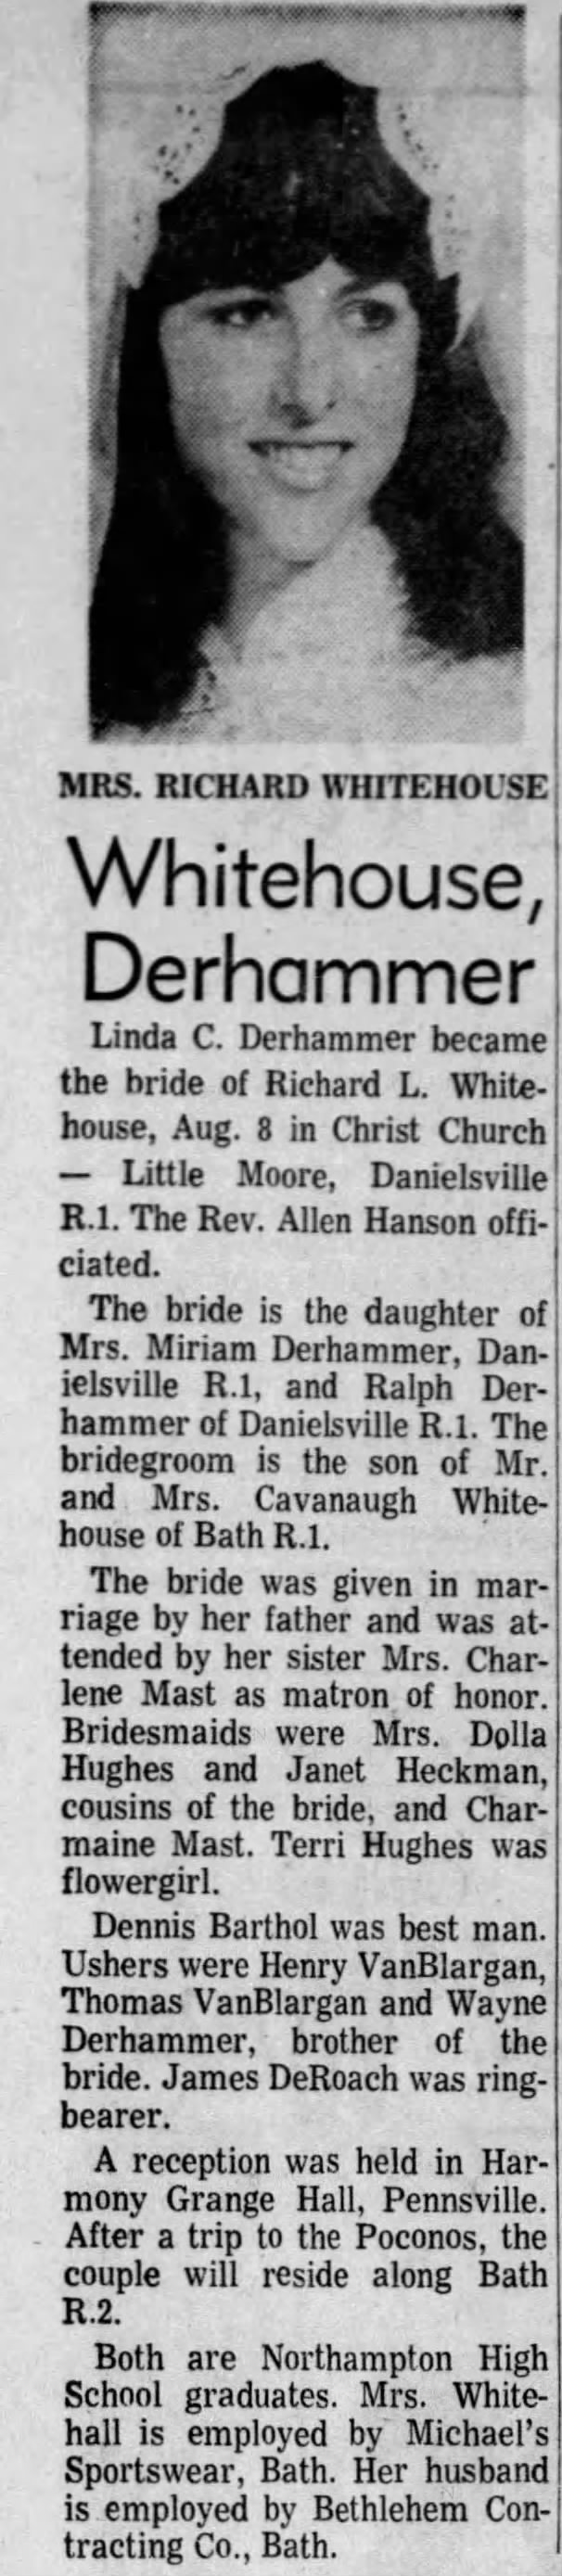 Derhammer-Whitehouse wedding